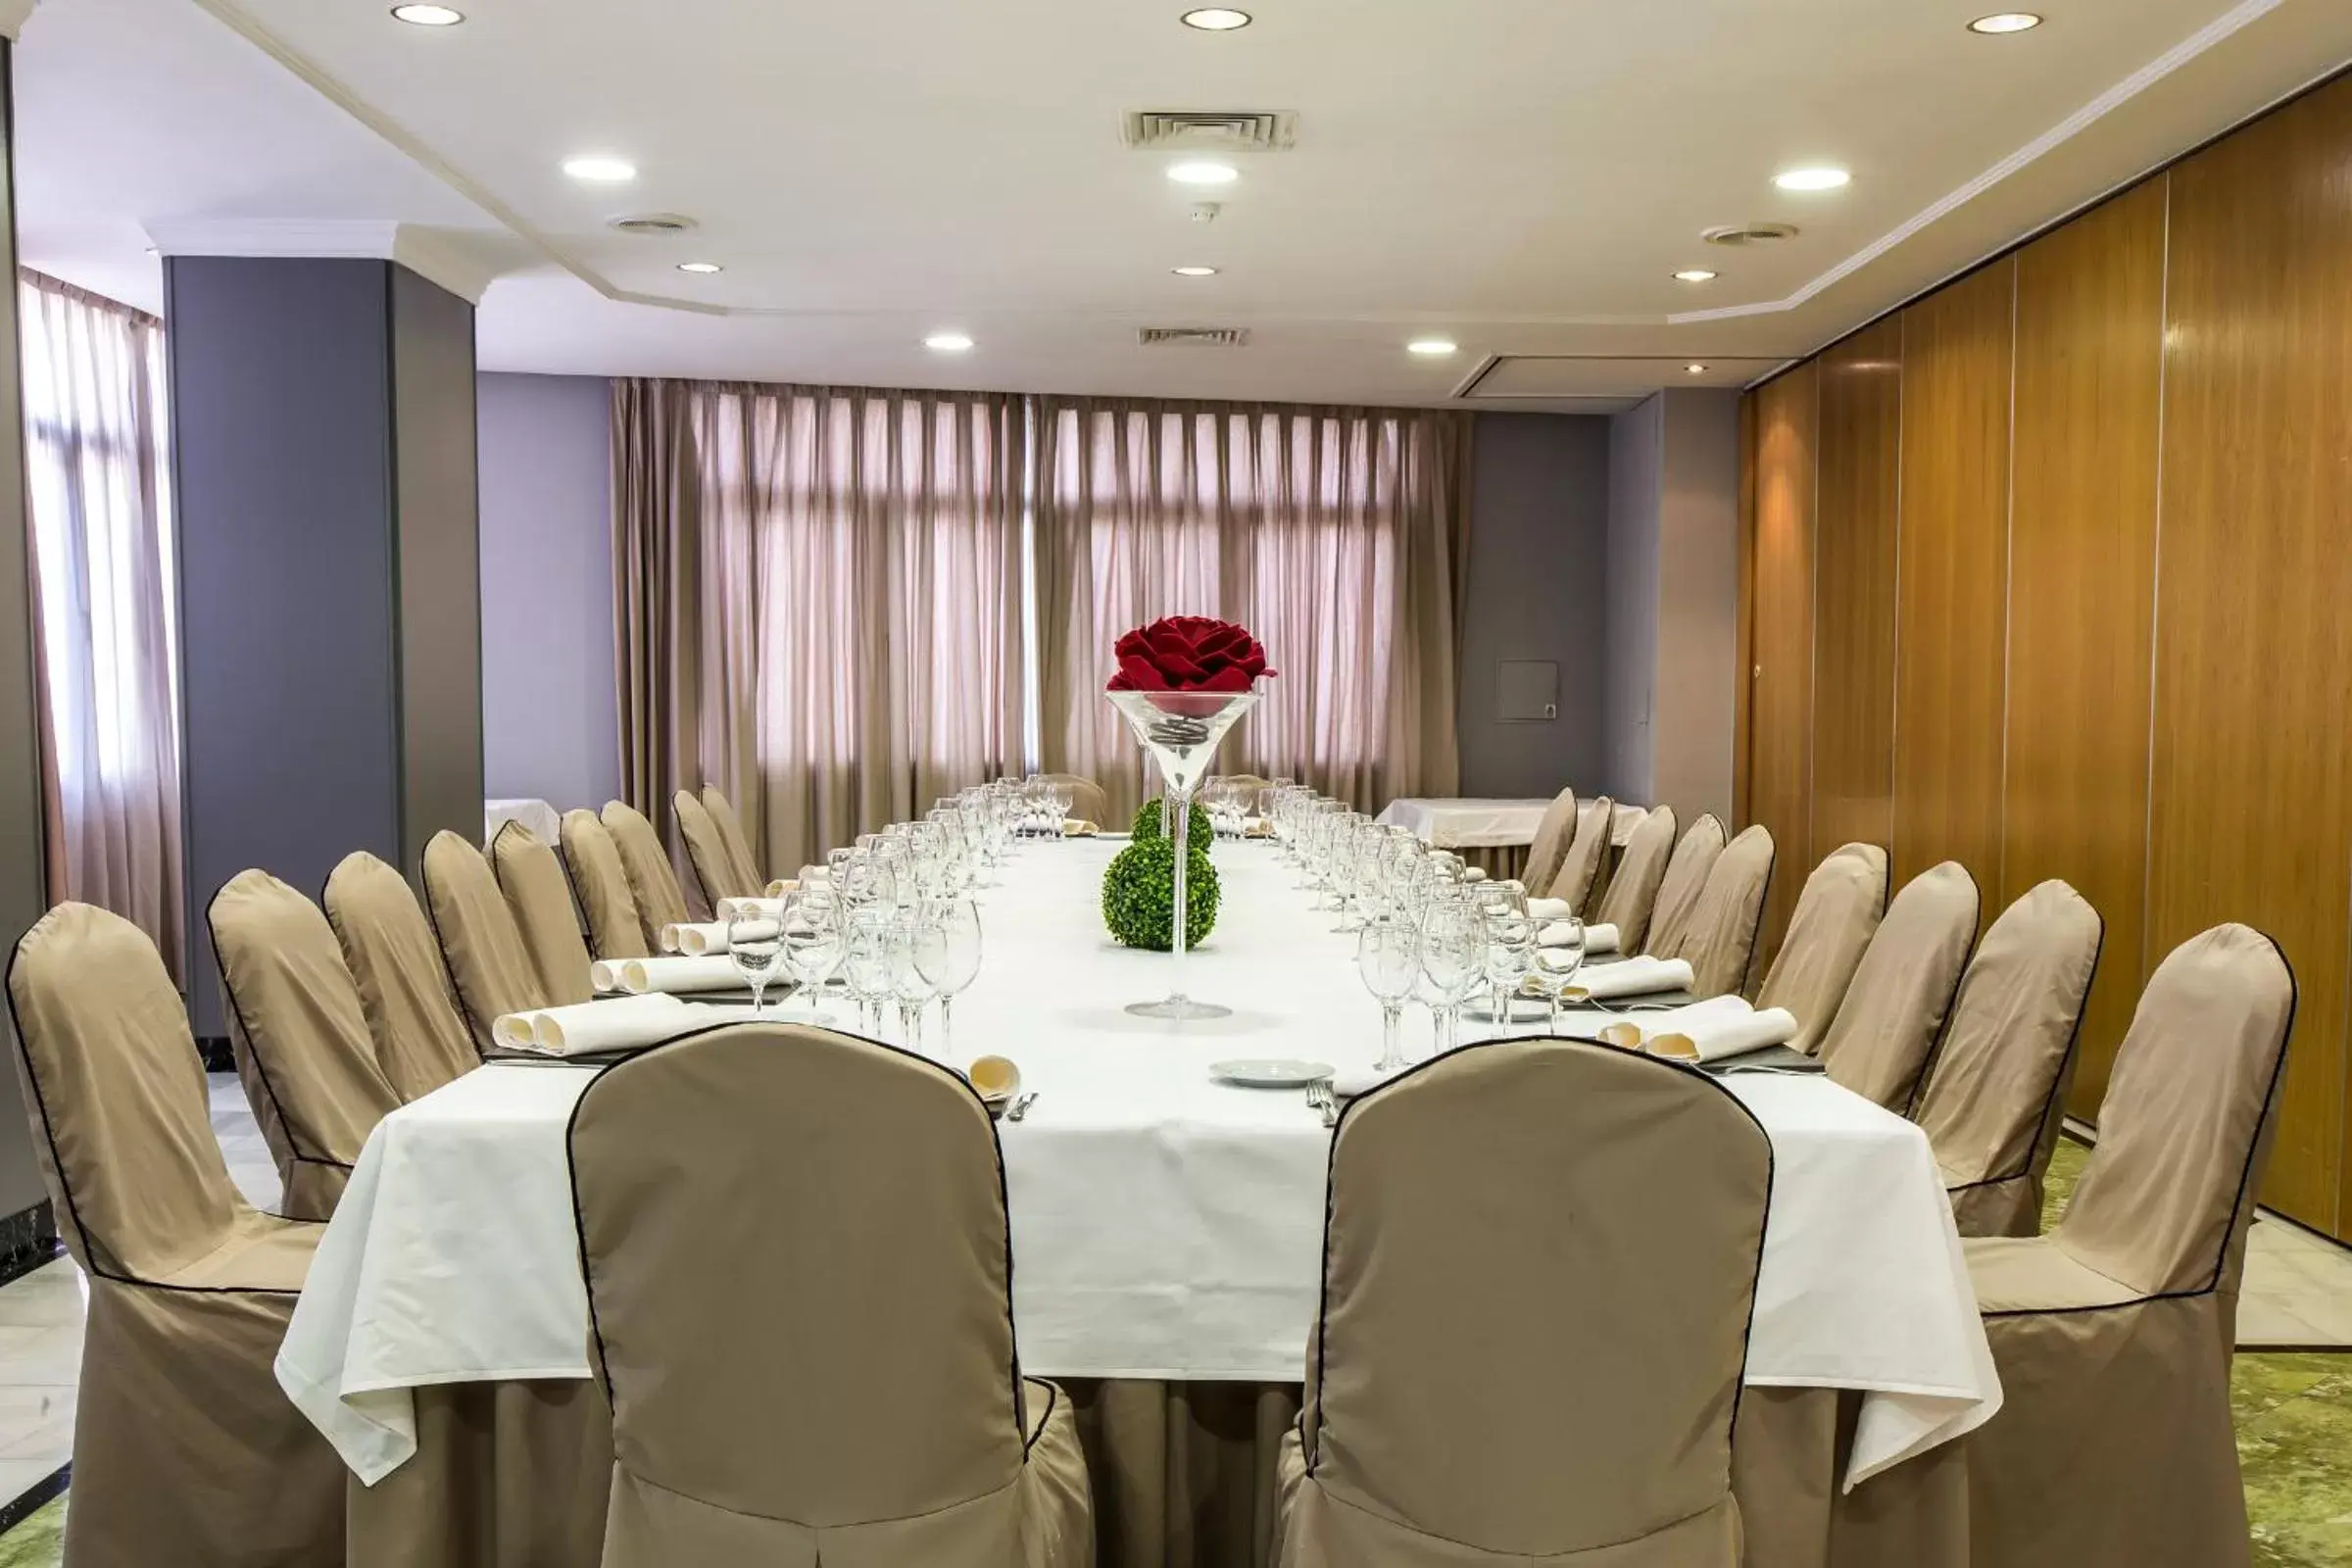 Banquet/Function facilities, Banquet Facilities in Leonardo Hotel Granada